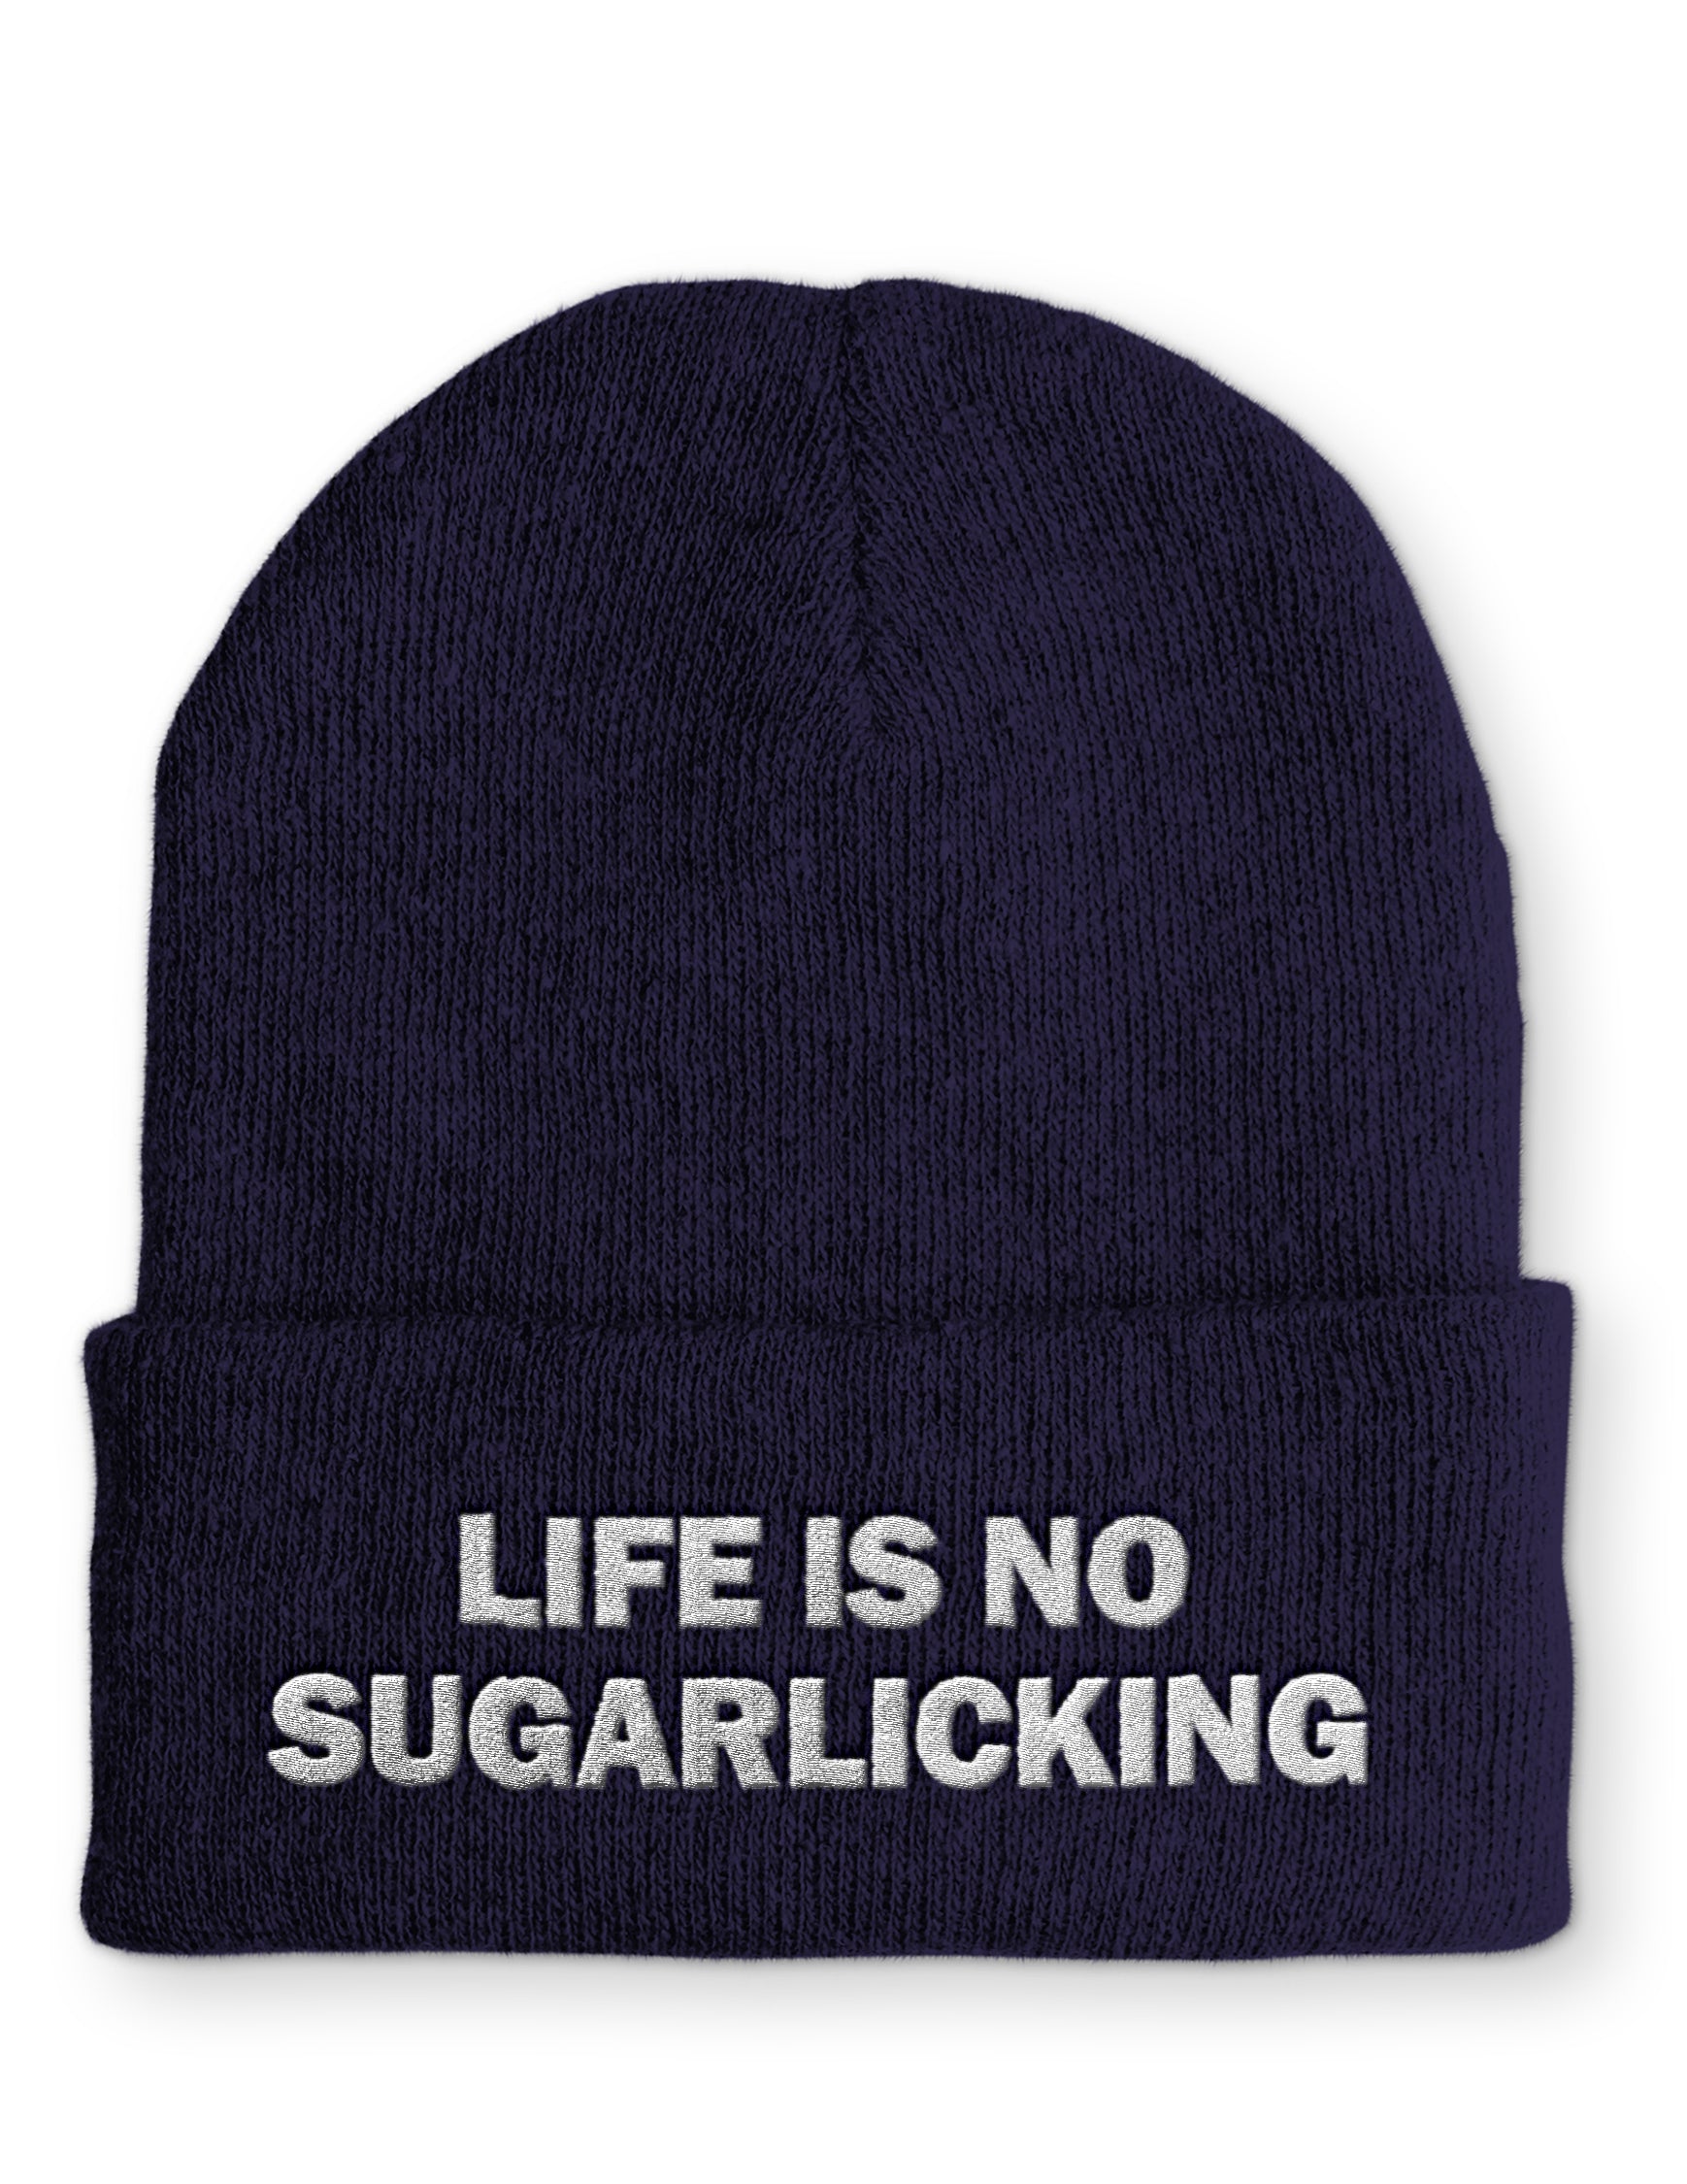 Mütze Life is no Sugarlicking